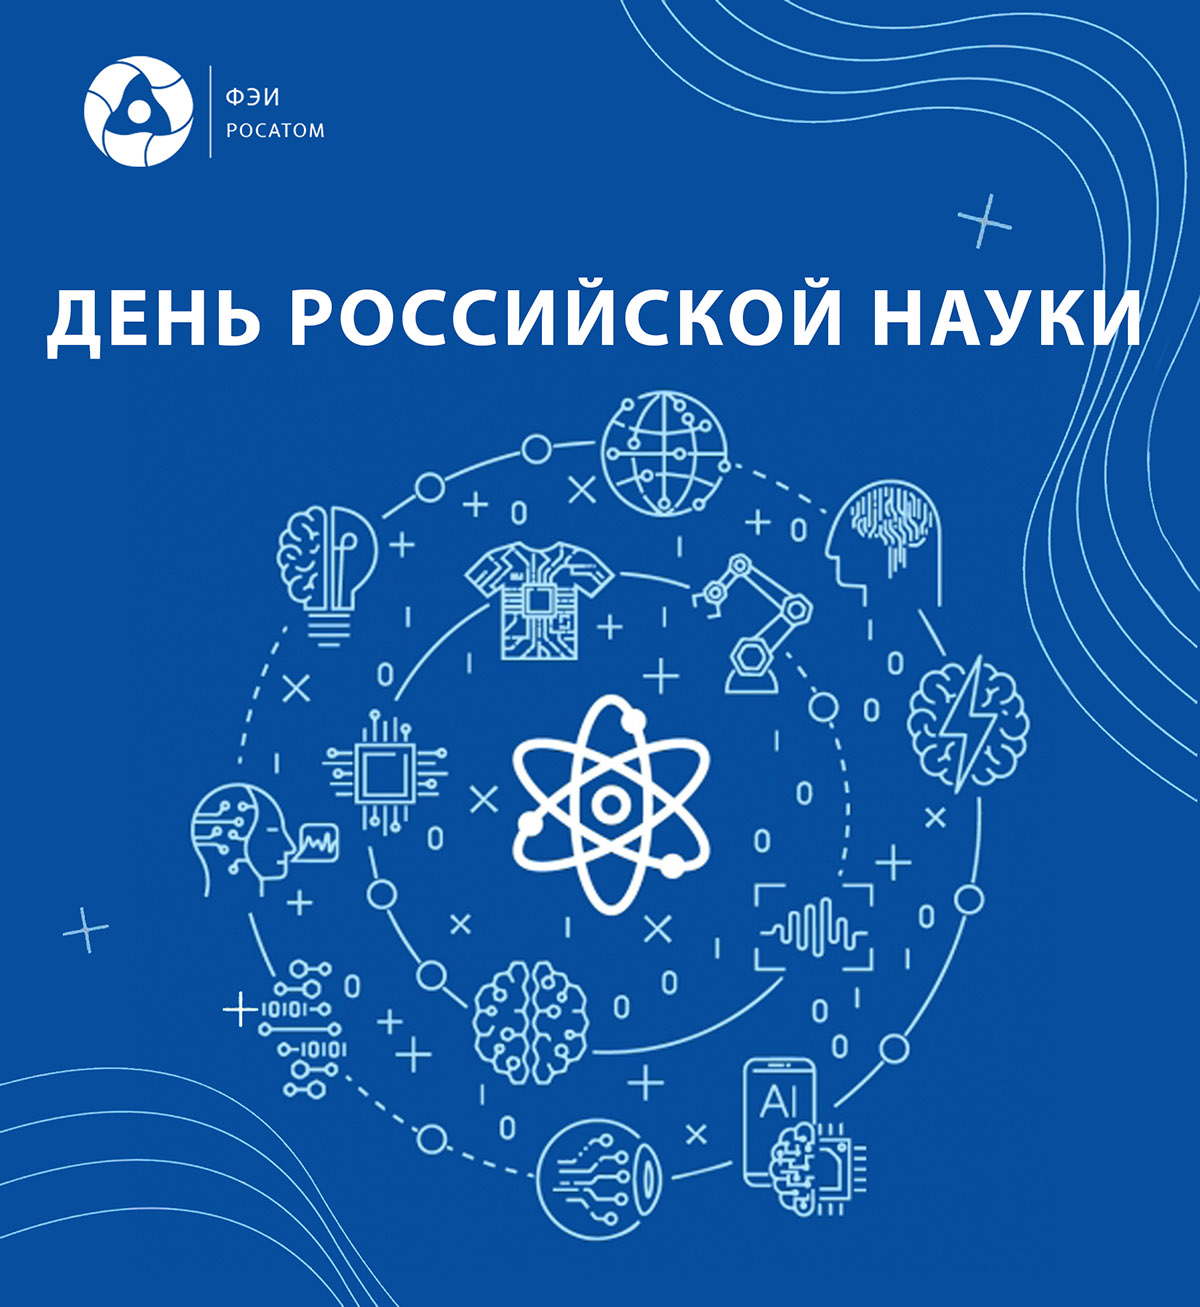 Развитие атомной энергетики, подготовку кадров и ядерную медицину обсудят в Обнинске.